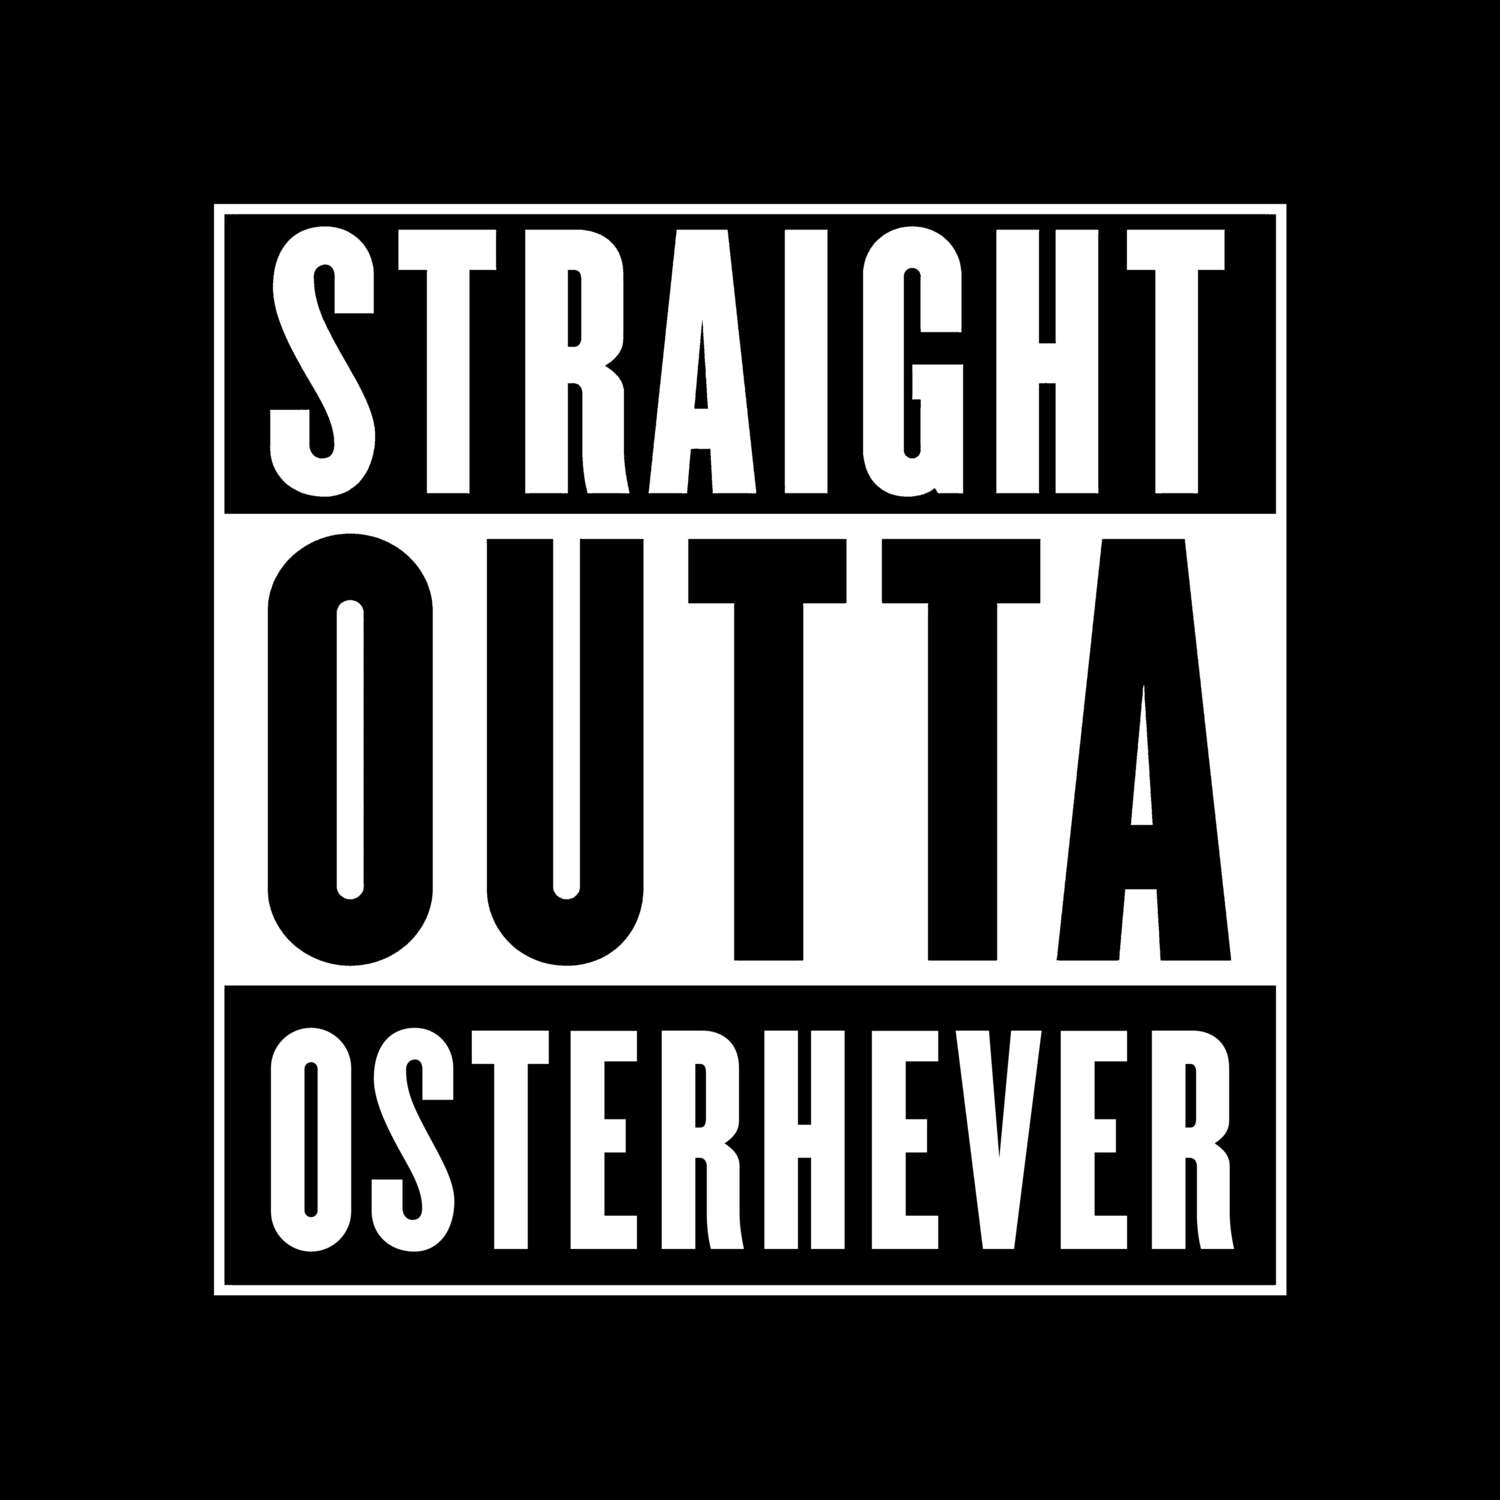 Osterhever T-Shirt »Straight Outta«